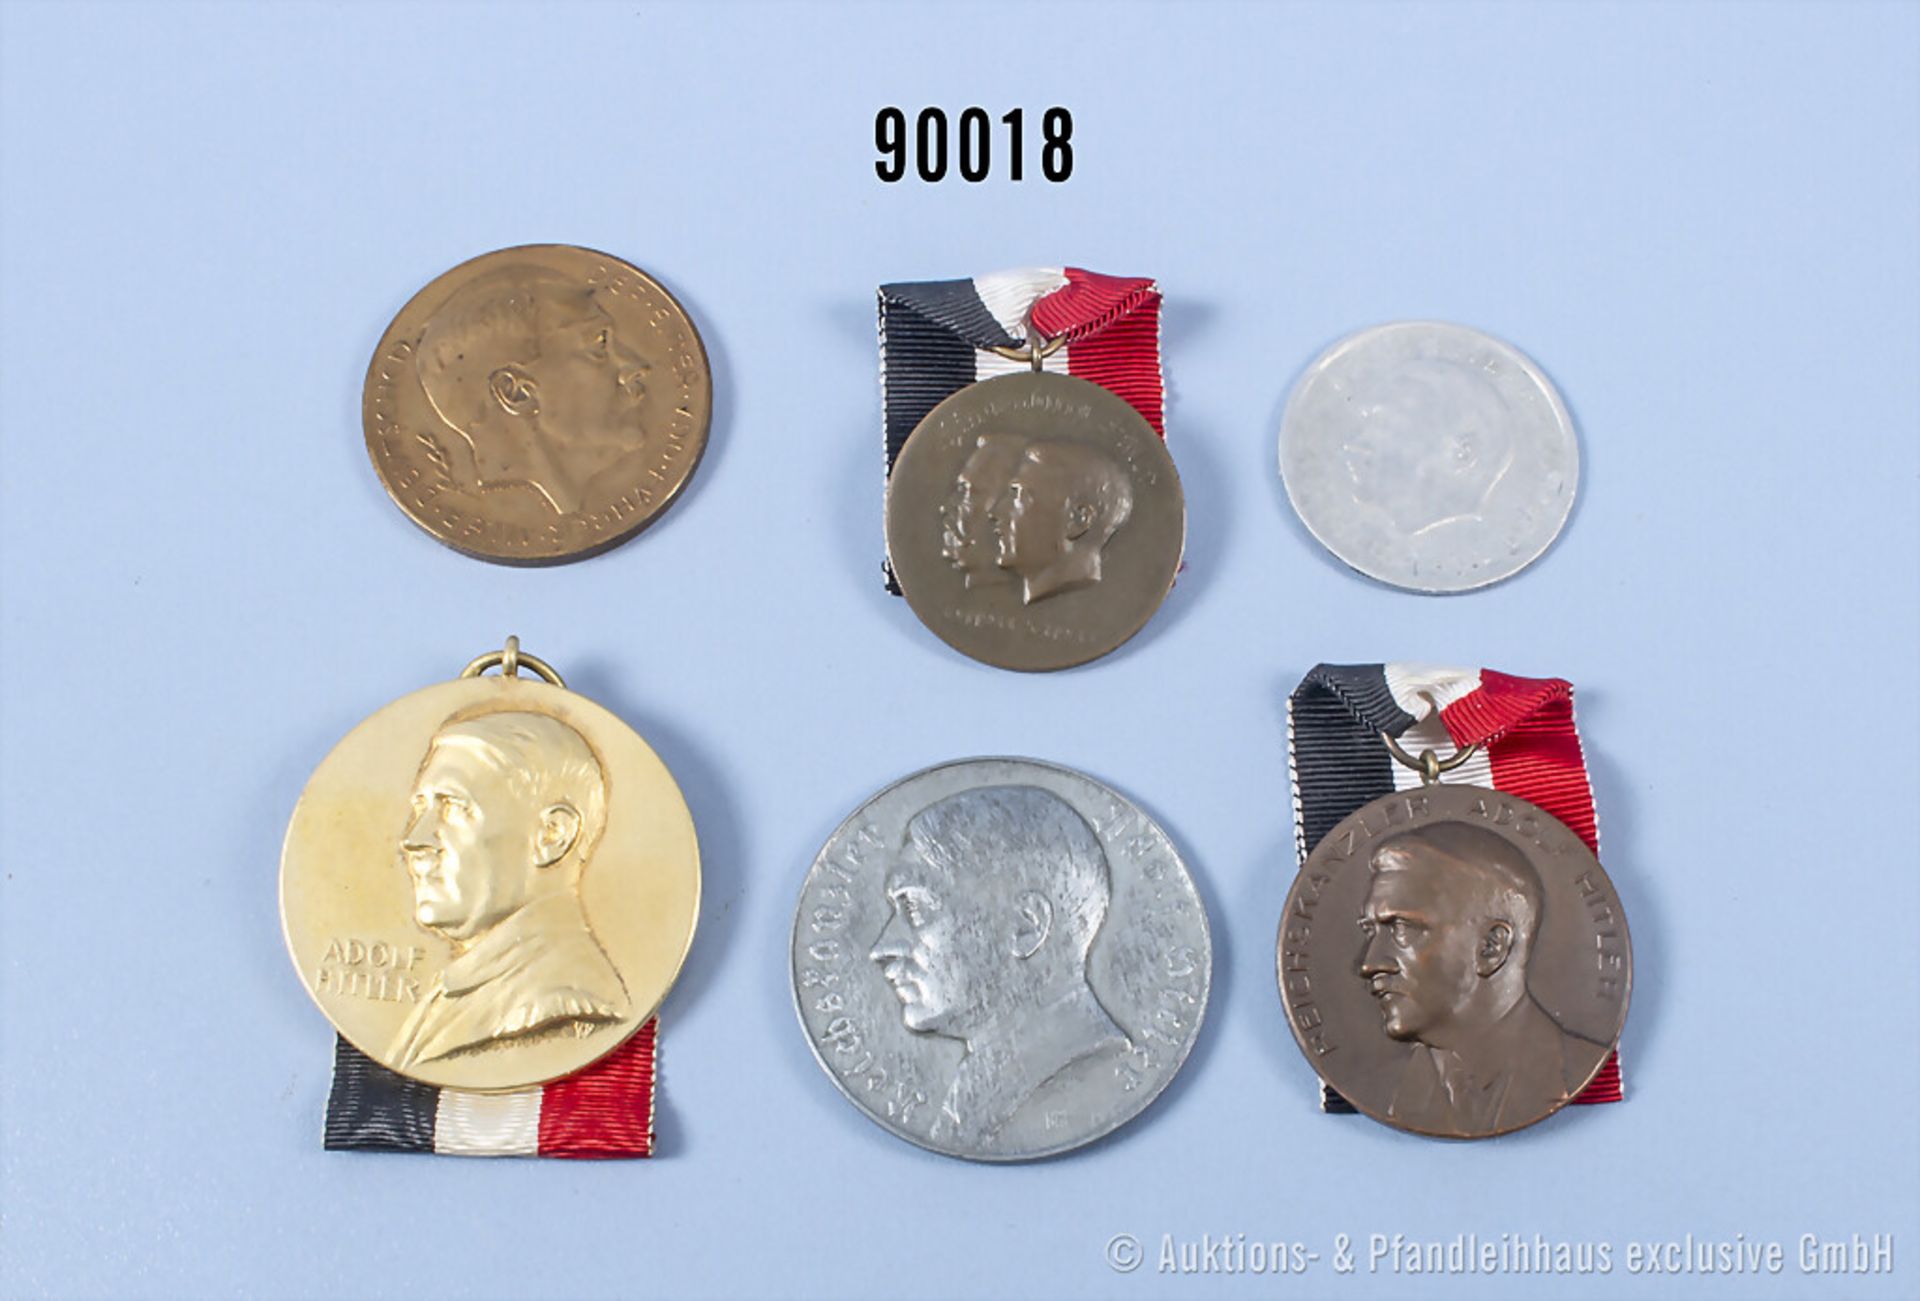 Konv. 6 verschiedene Medaillen mit Hitlermotiven, gemischter Zustand, siehe Anmerkung ...